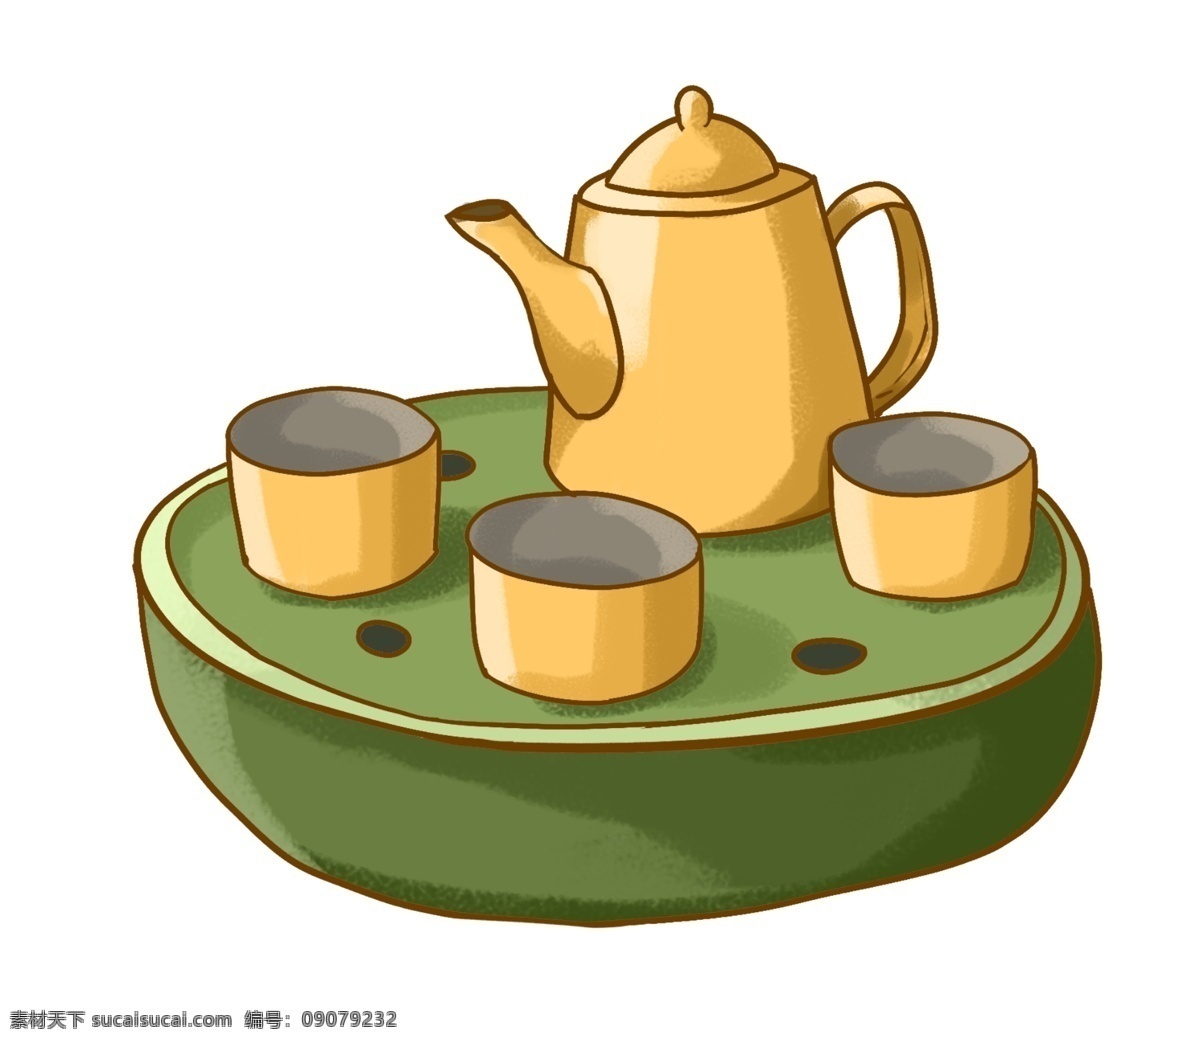 黄色 茶壶 茶杯 插图 绿色平底 黄色茶壶 黄色茶杯 喝茶用品 精致的茶杯 中国风 古风 中国水墨 功夫茶